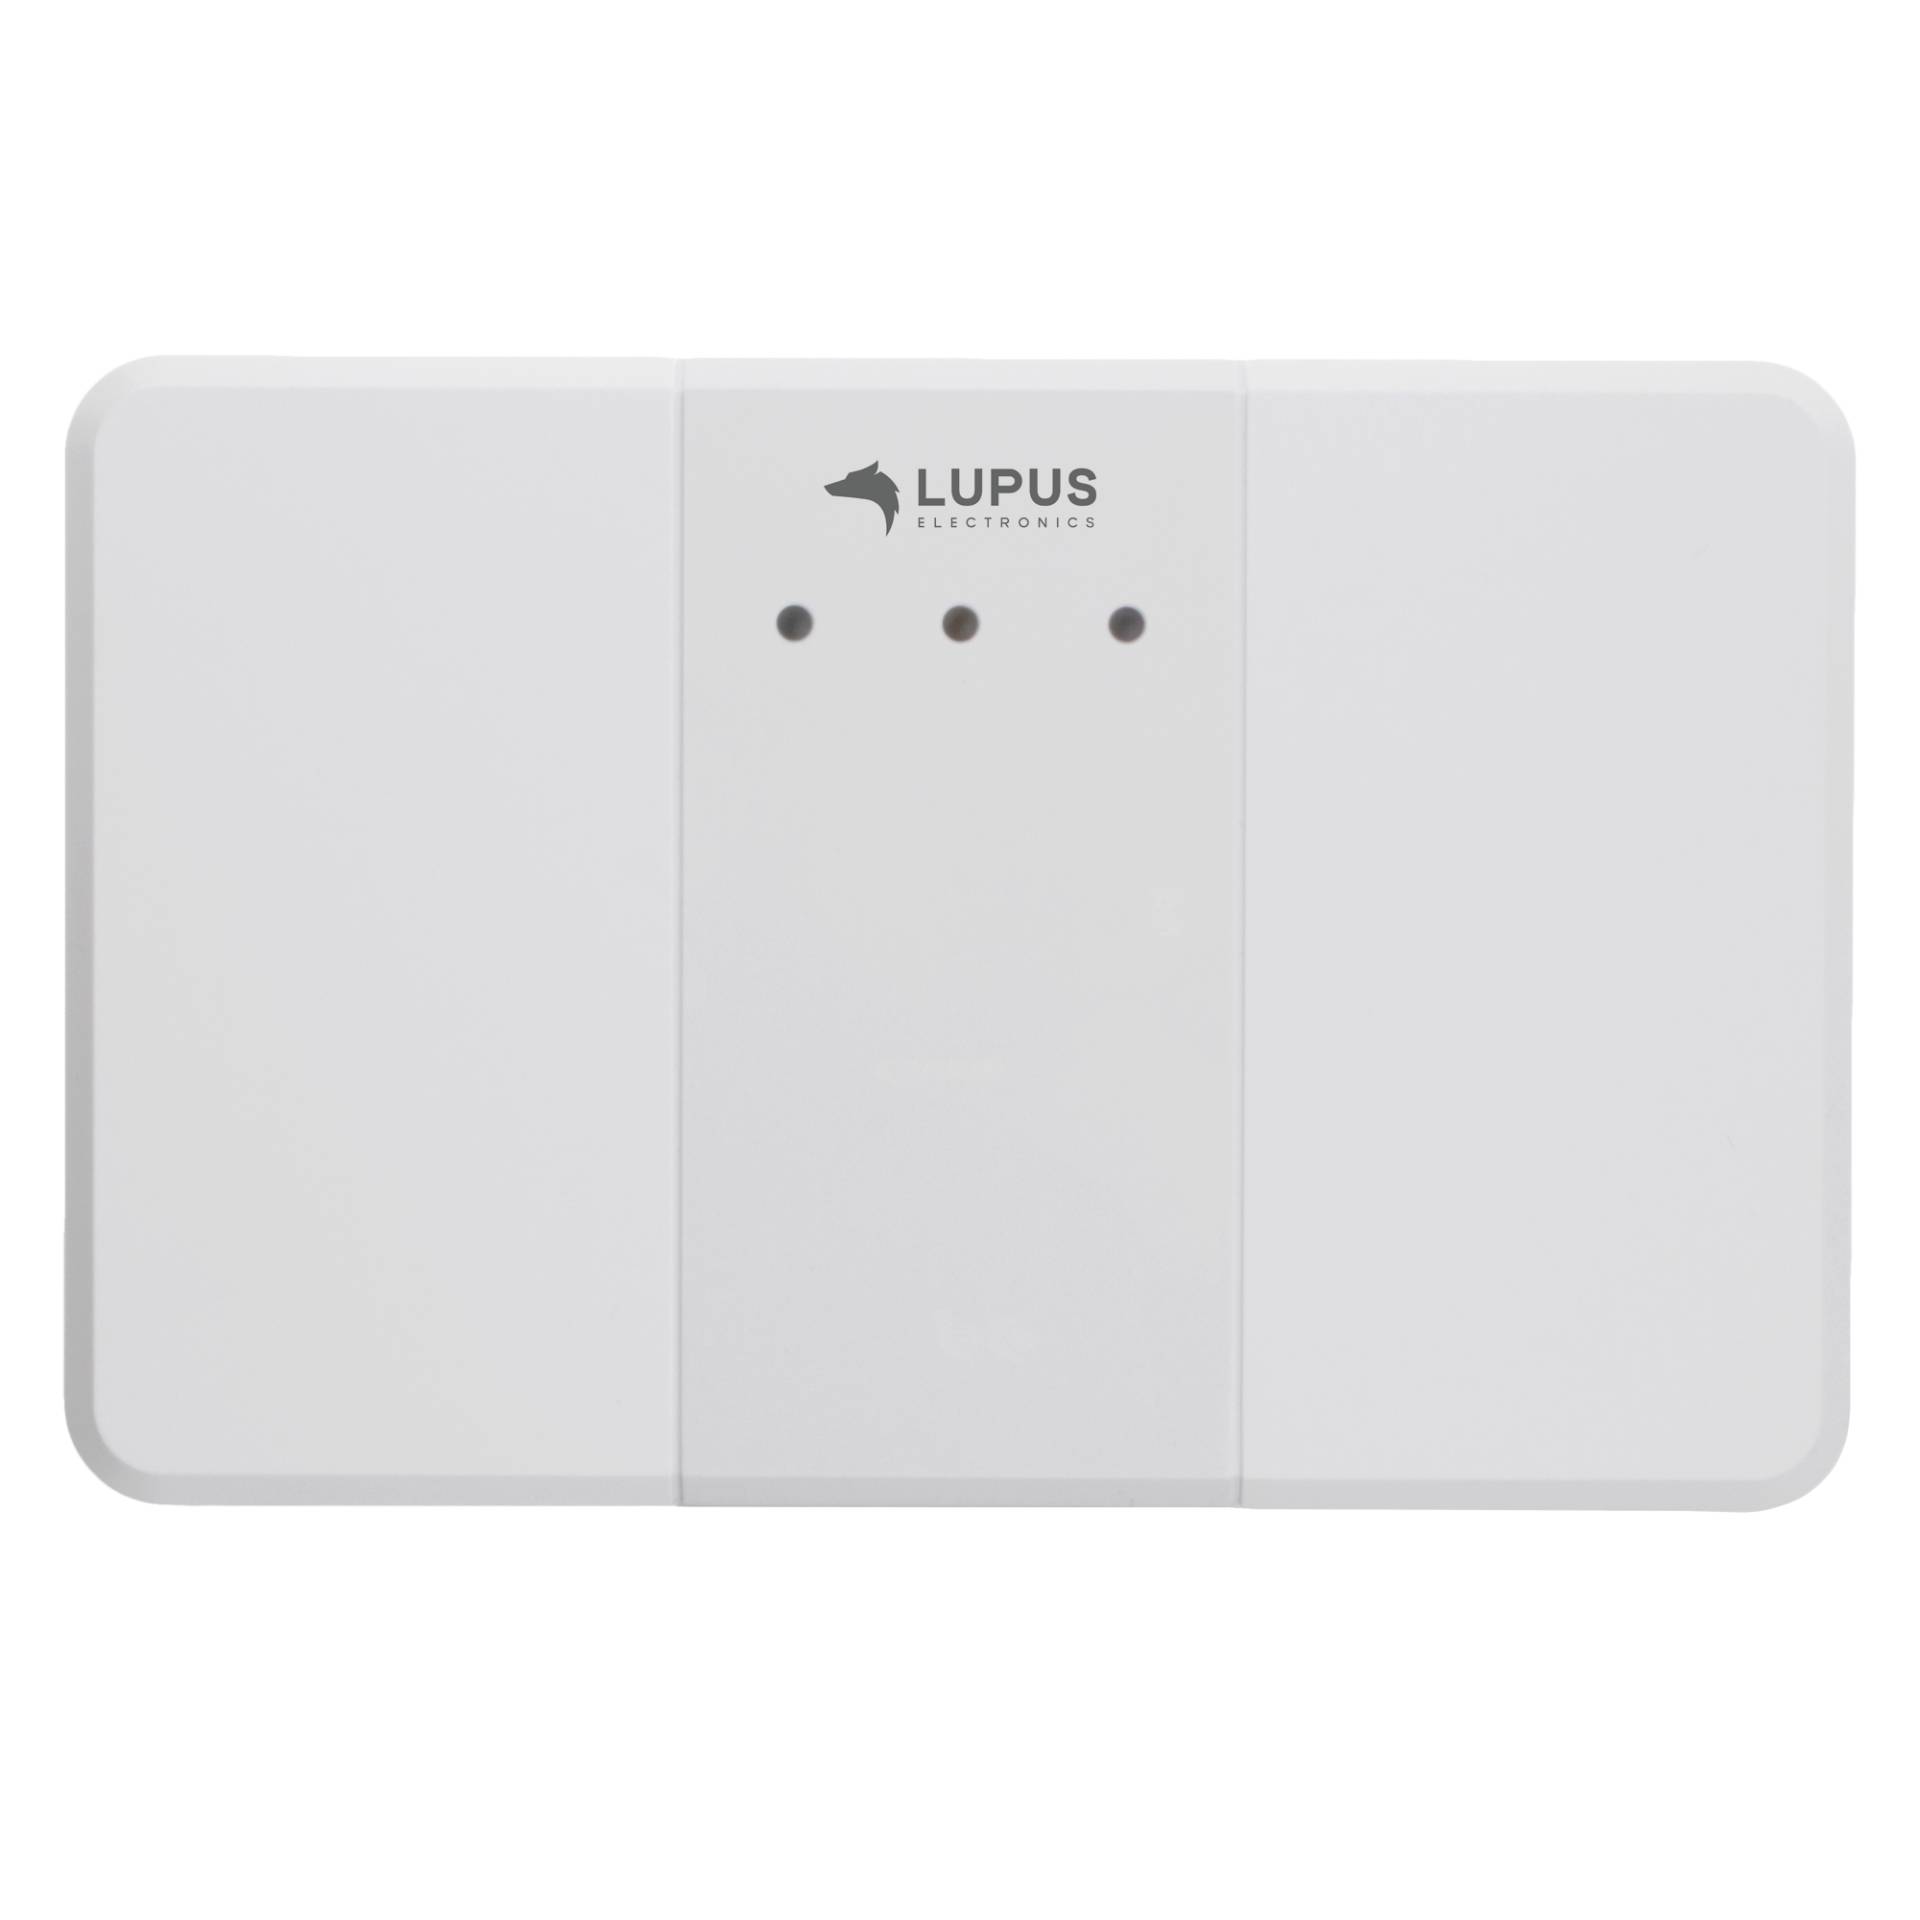 Lupus - Drahtloser Sensoreingang (9 fach) (Anschluss von externen Meldern, Potentialfreier Kontakt) von Lupus Electronics